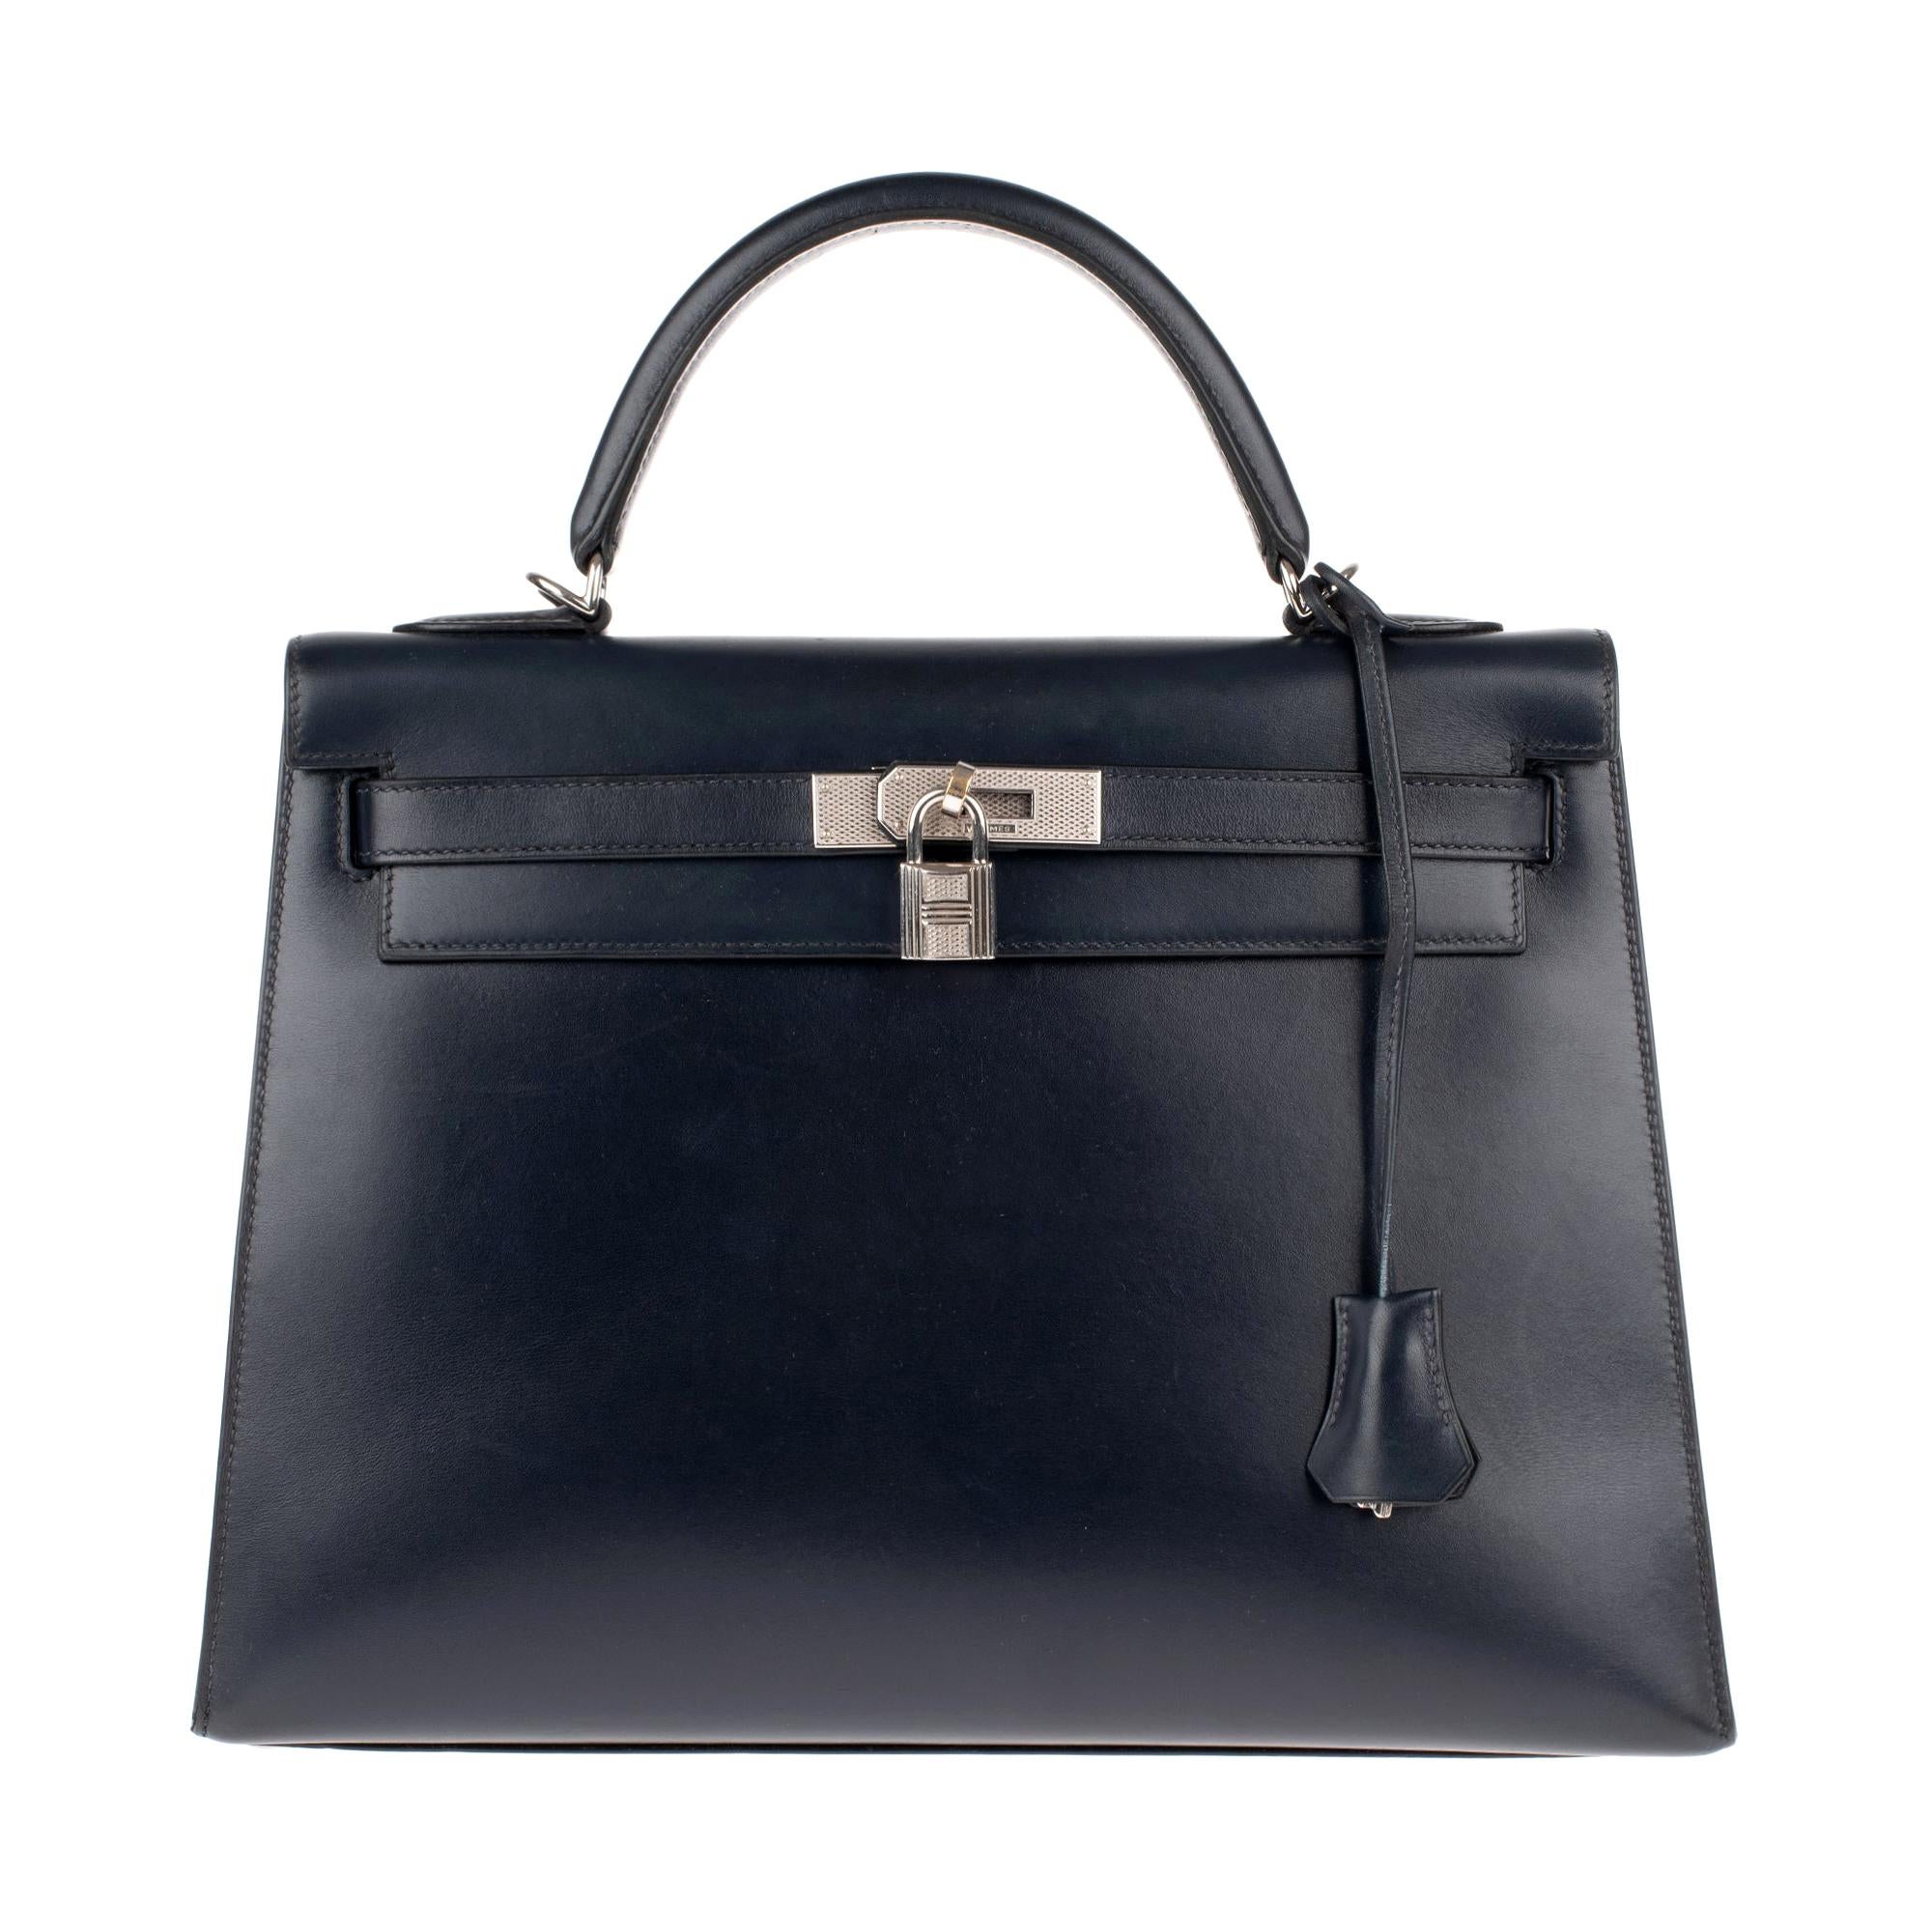 Collector Hermès Kelly 32 Handtasche mit Riemen in marineblauem Kalbsleder Box Leder!